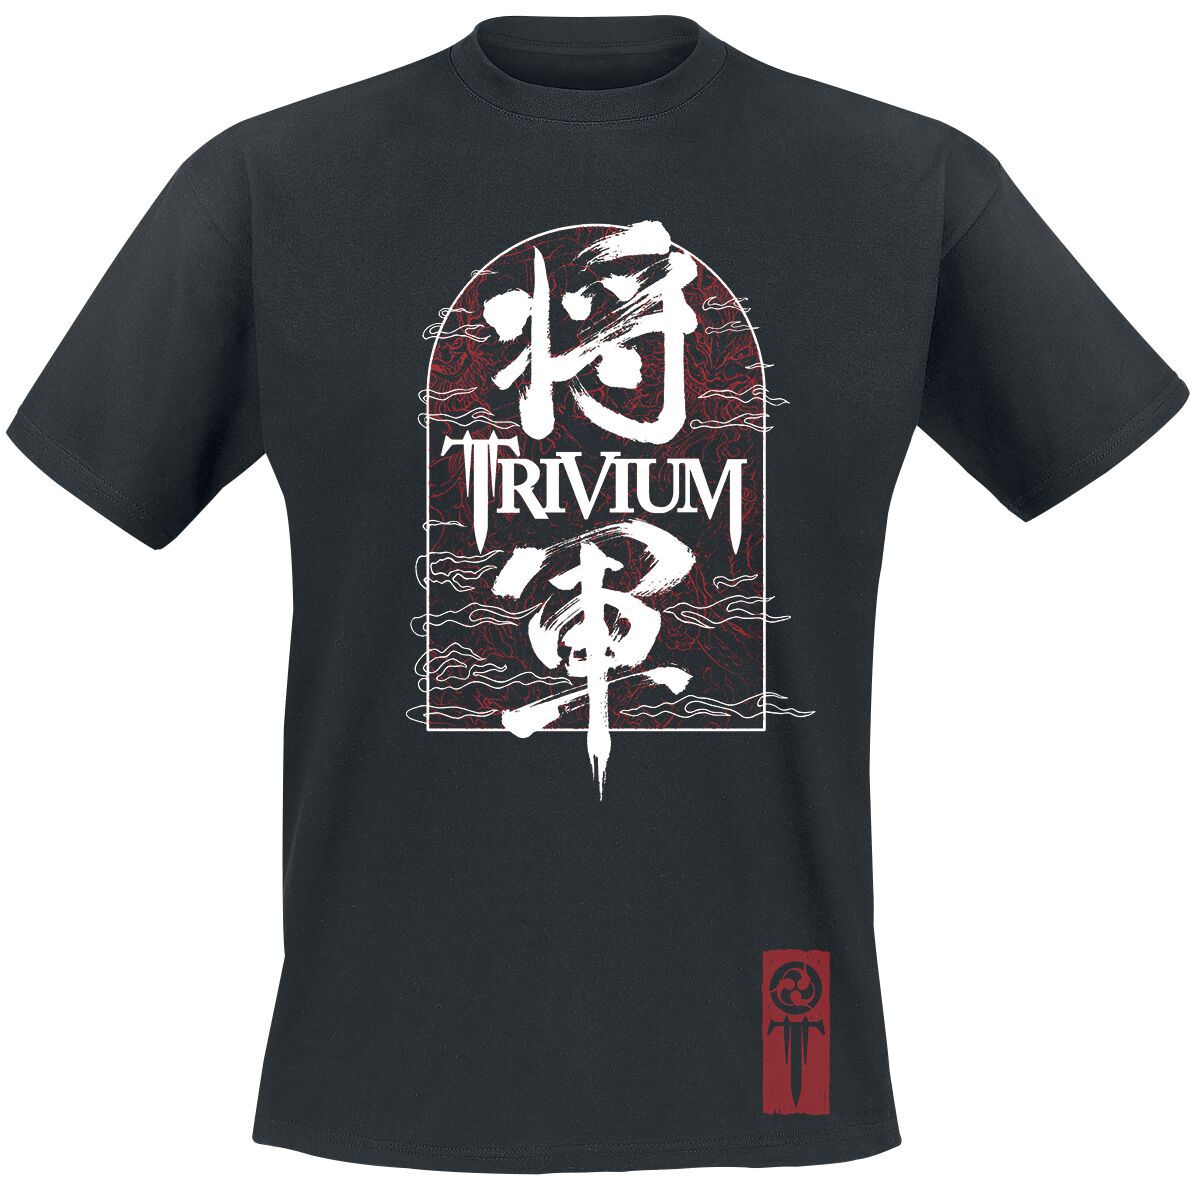 Image of Trivium Shogun Remix T-Shirt schwarz